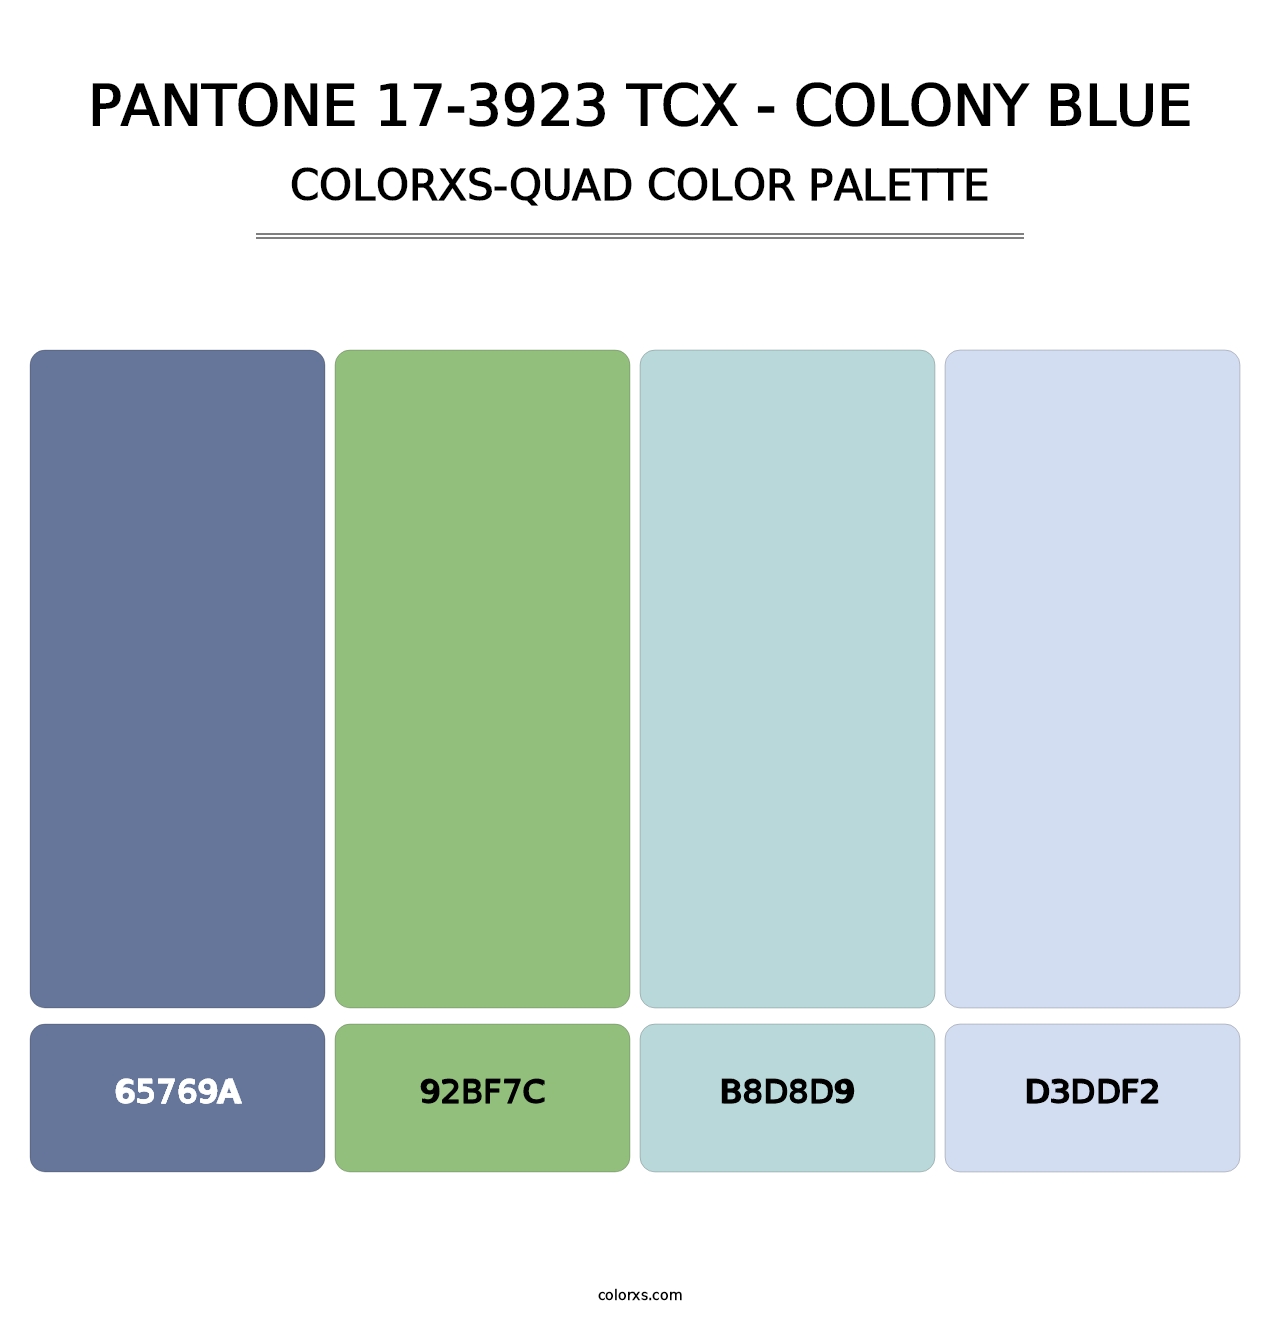 PANTONE 17-3923 TCX - Colony Blue - Colorxs Quad Palette